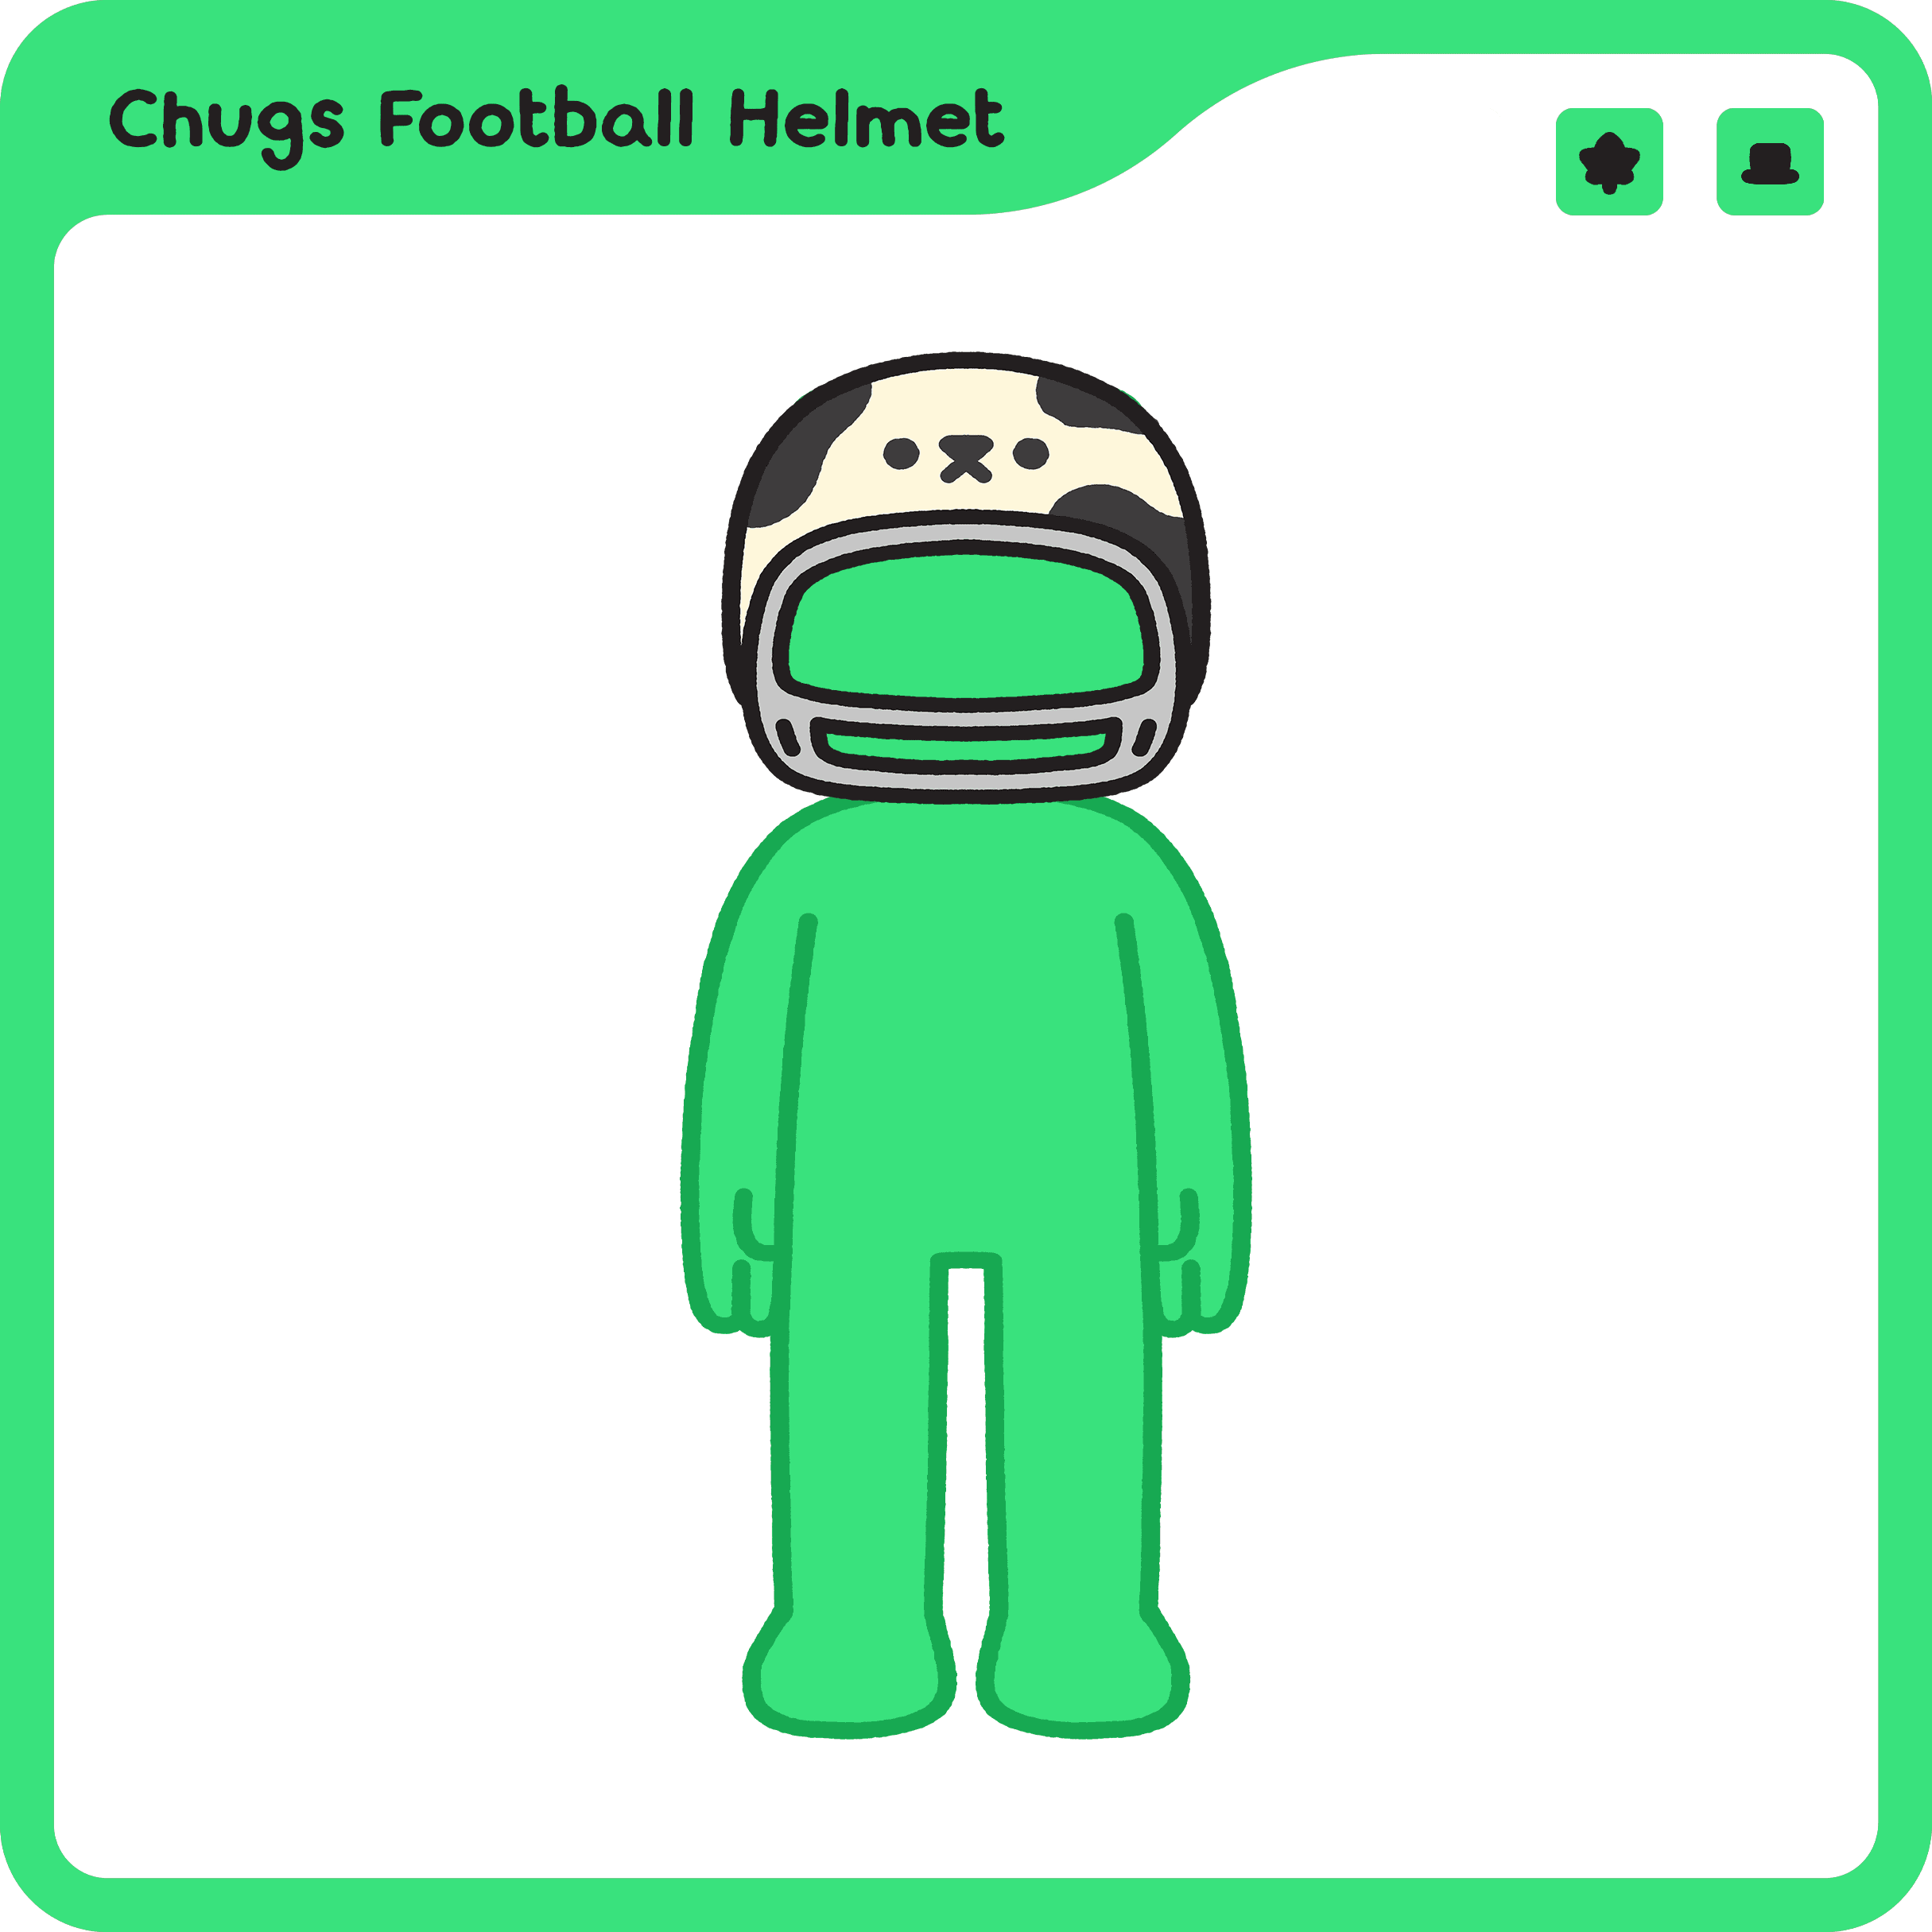 Chugs Football Helmet